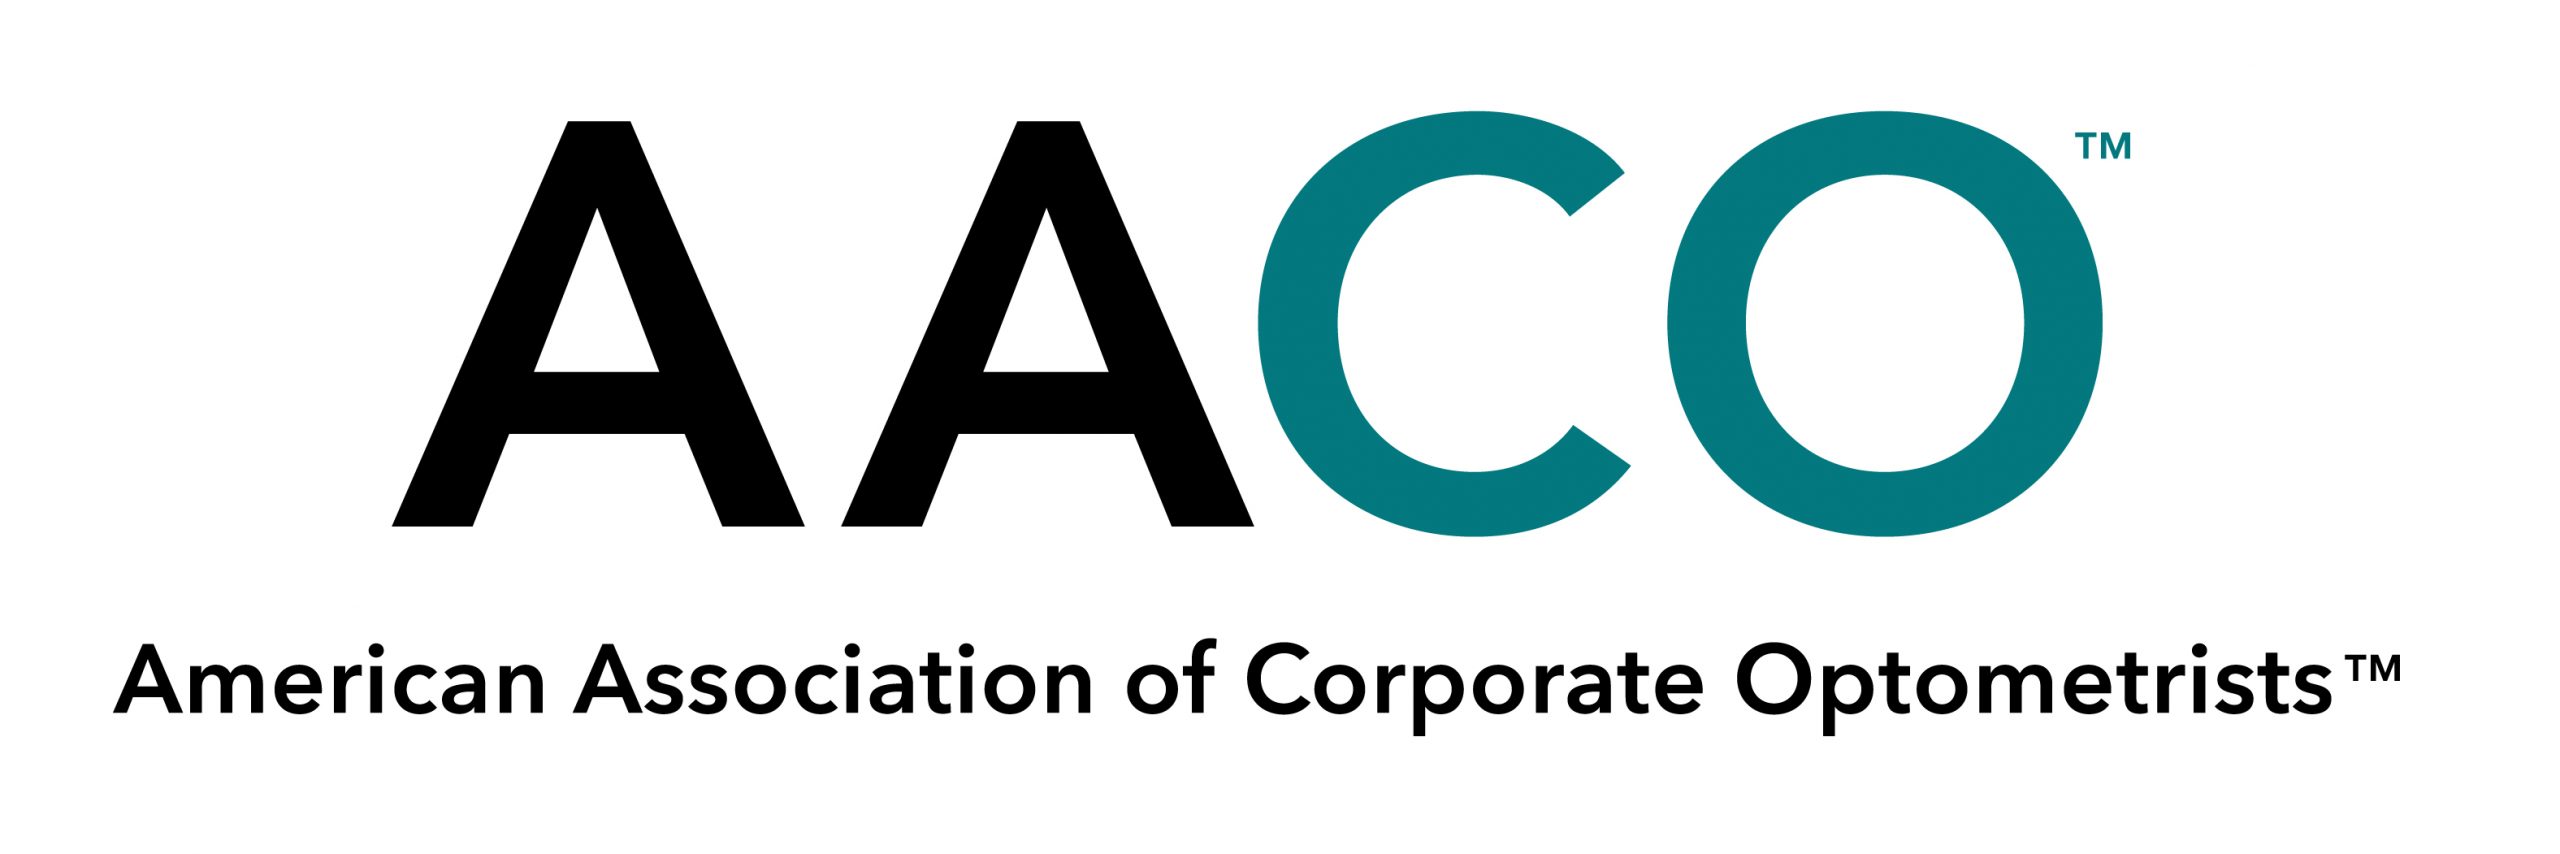 AACO Logo on White